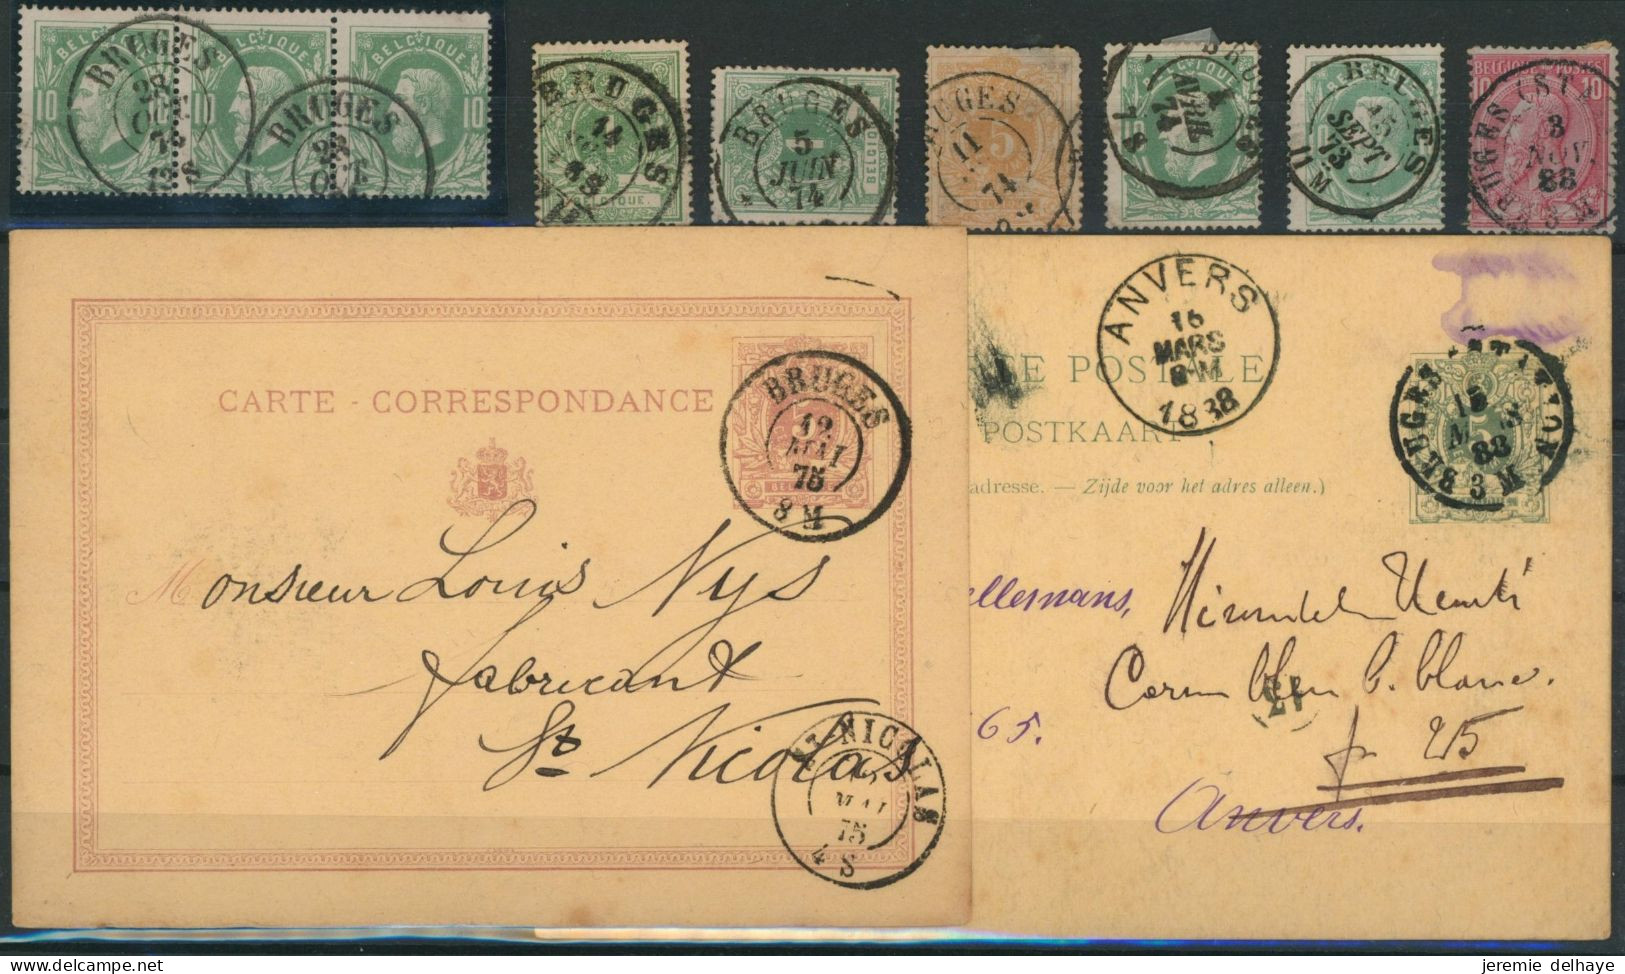 émission 1869 - Petite Sélection Oblitération DC "Bruges" Soit 7 Timbres Et Deux Entiers Postaux. - 1869-1883 Léopold II